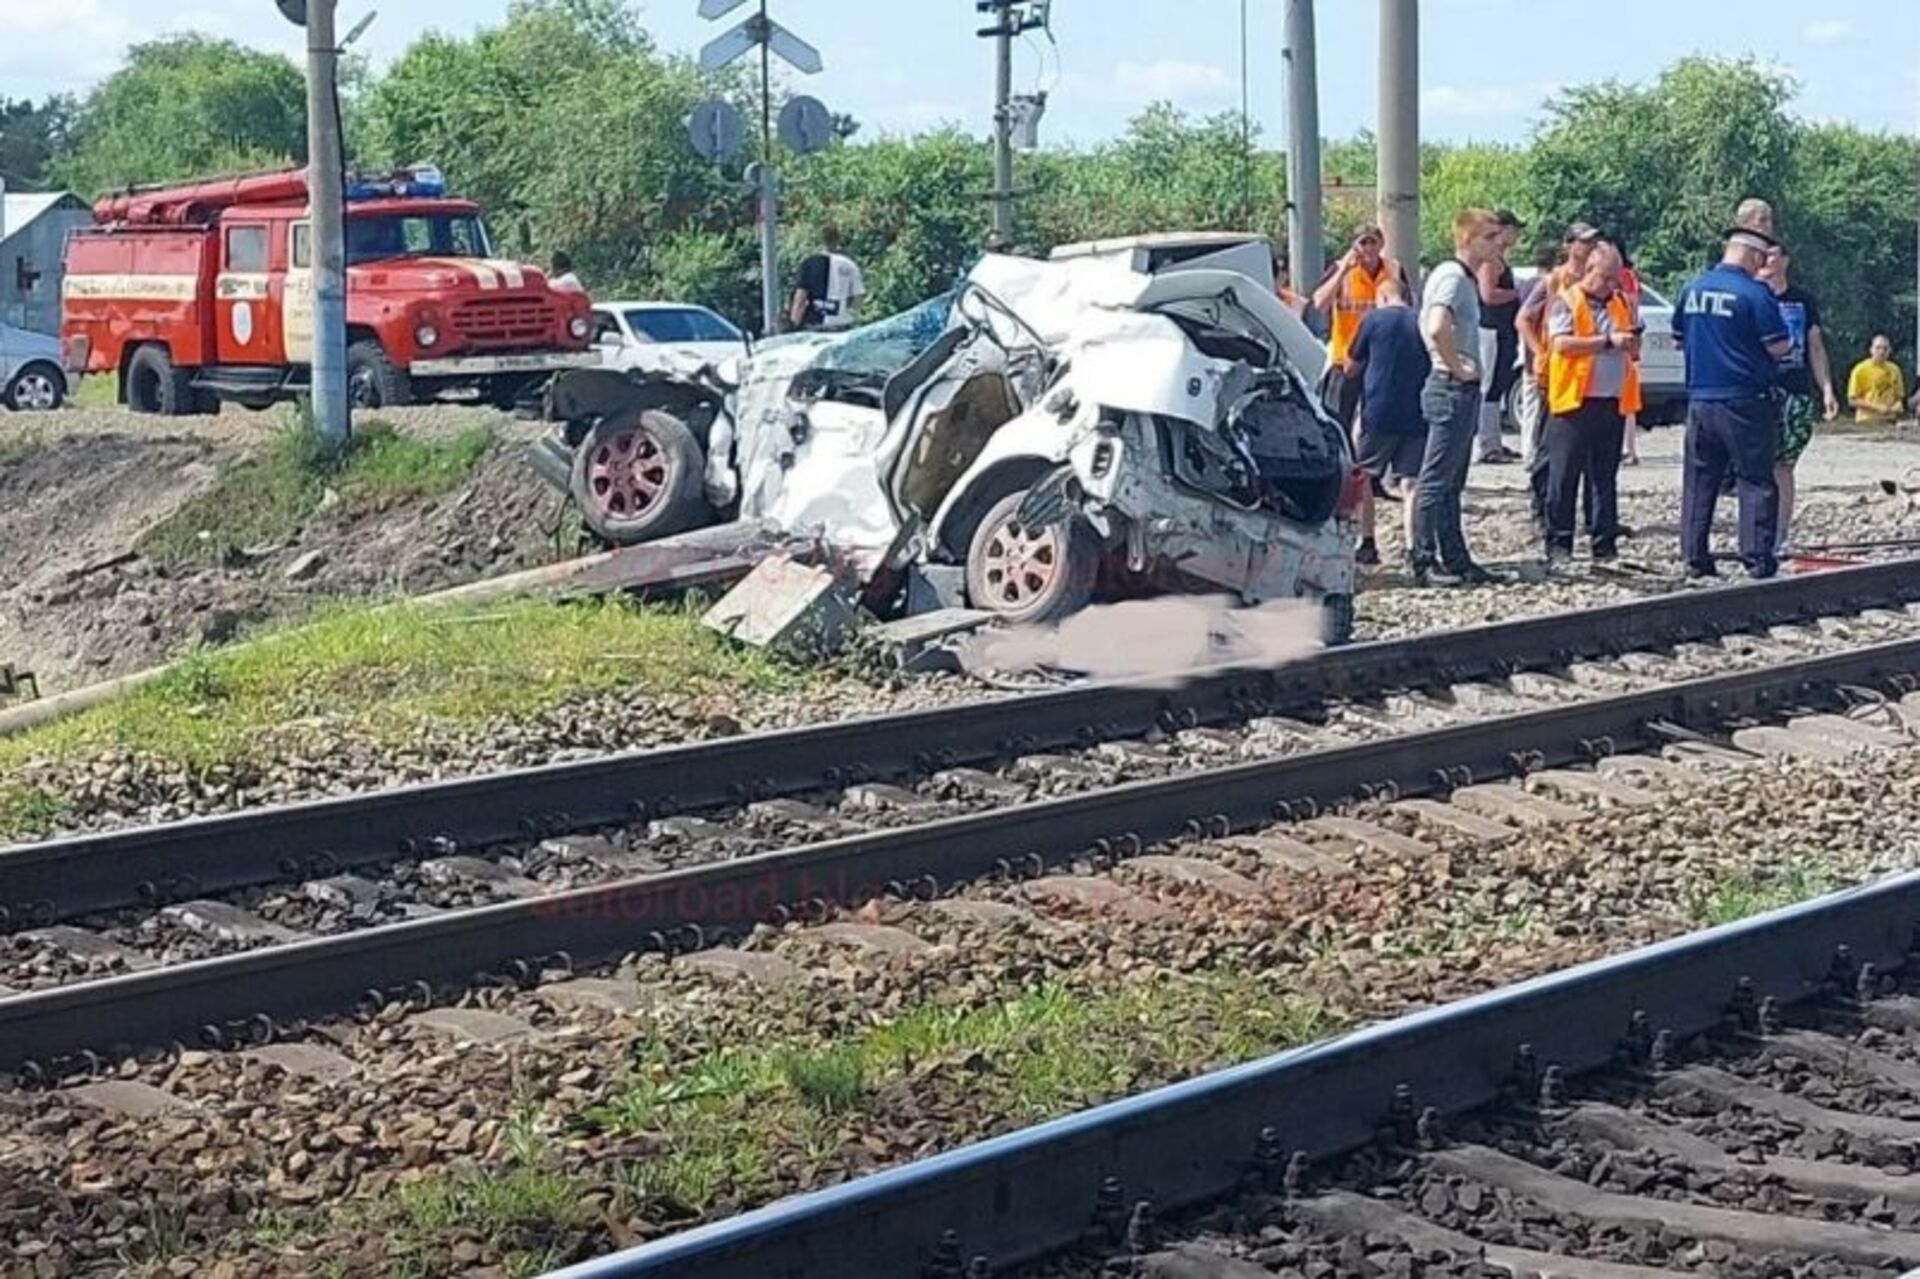 20 июля 2019 года. Происшествия на железной дороге. Столкновение поезда с авто.